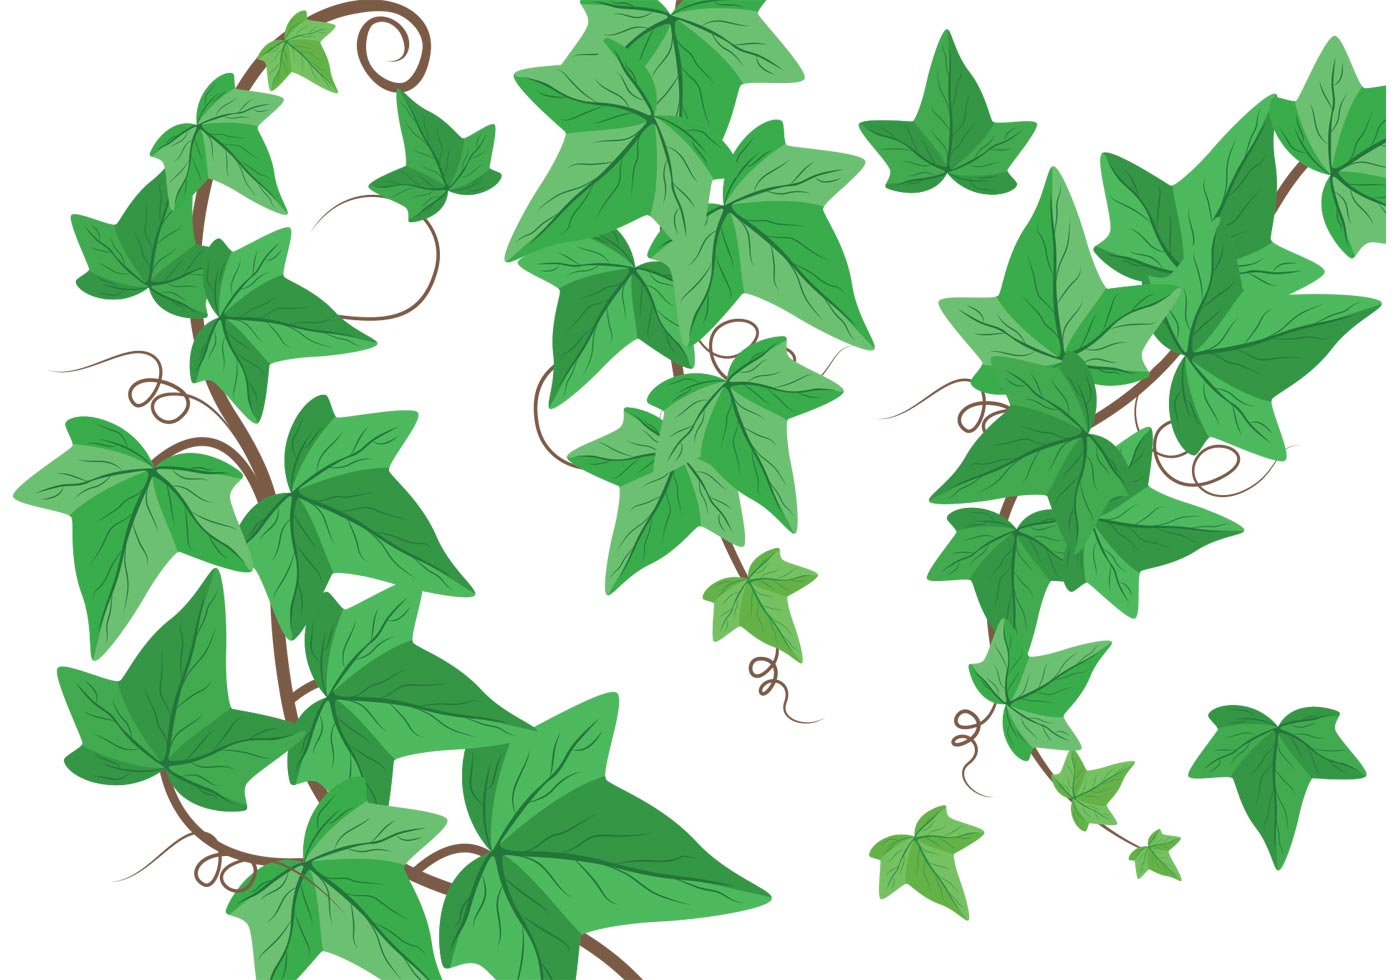 Ivy Leaf Vector At GetDrawings Free Download.